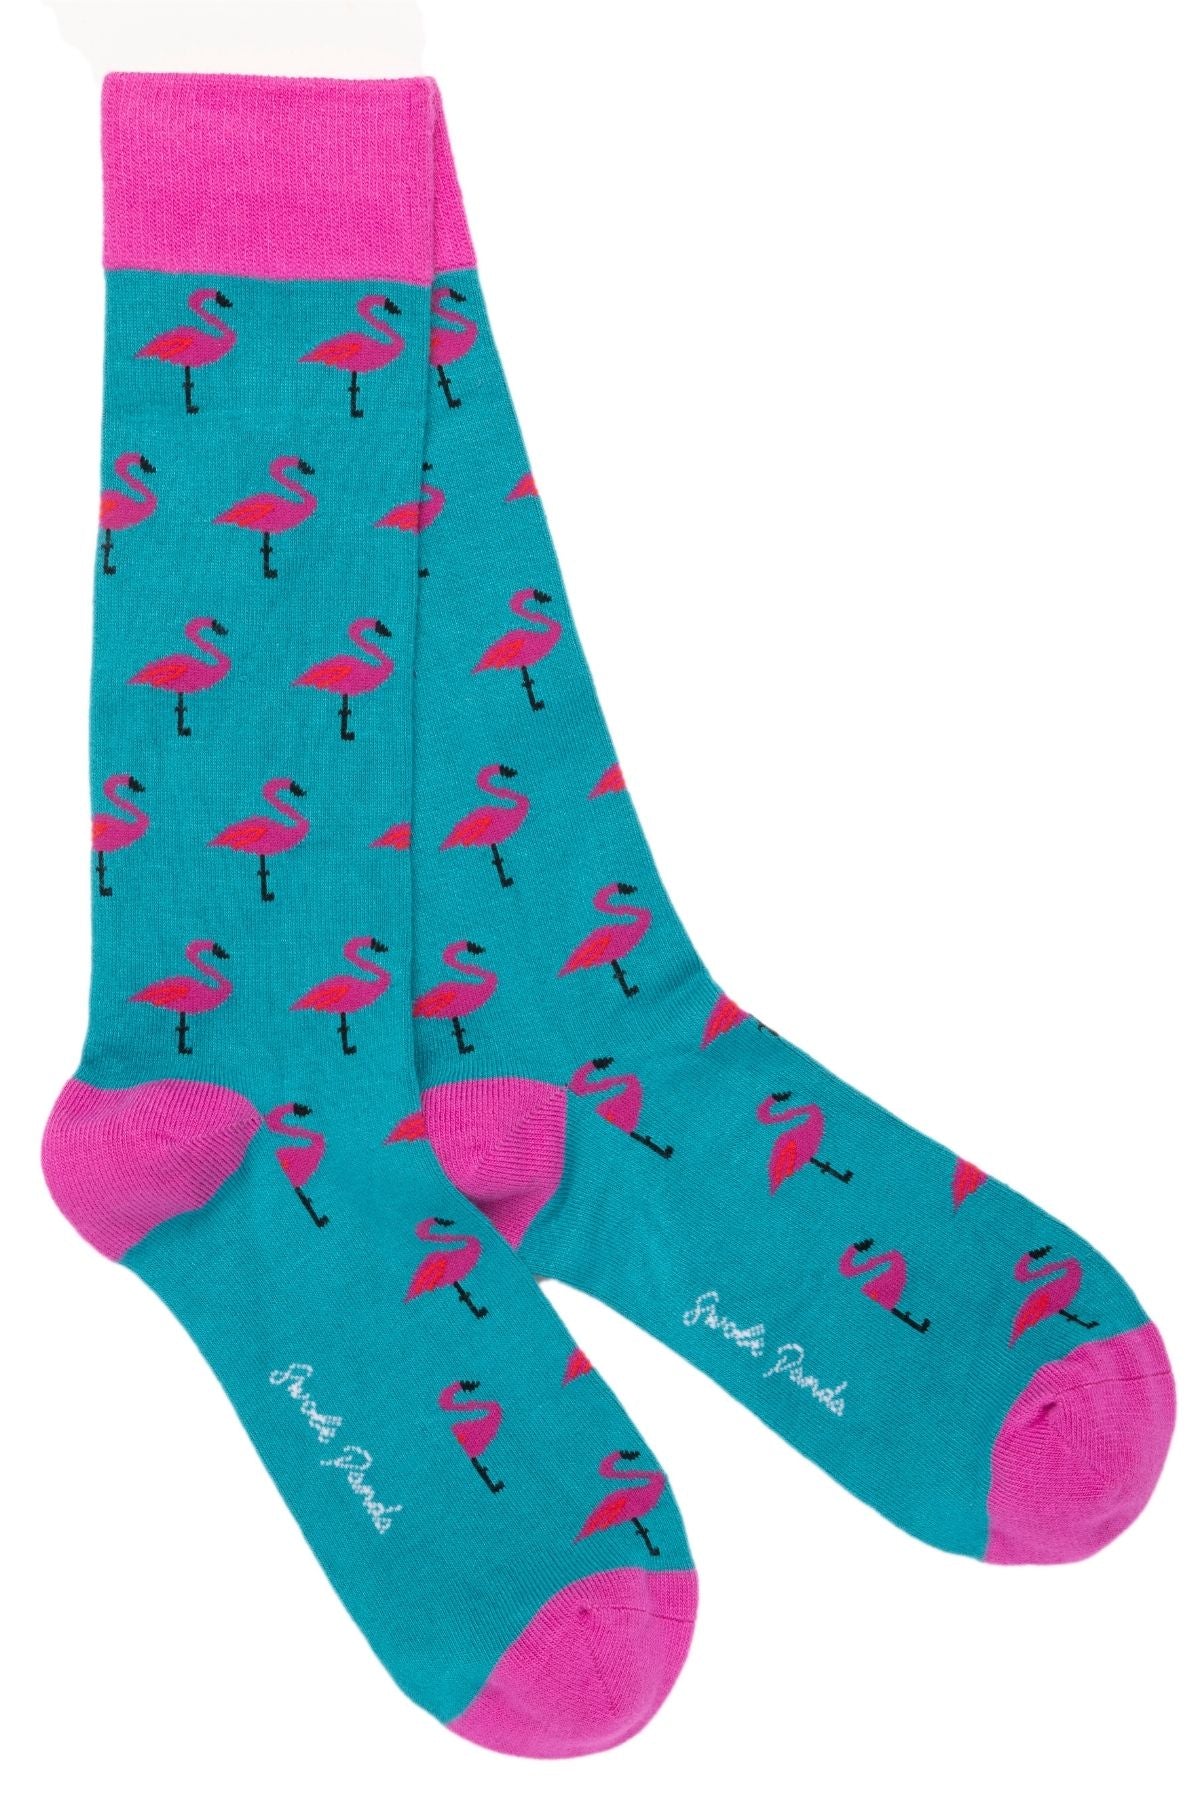 Elephant & Flamingo Bamboo Sock Bundle - Four Pairs